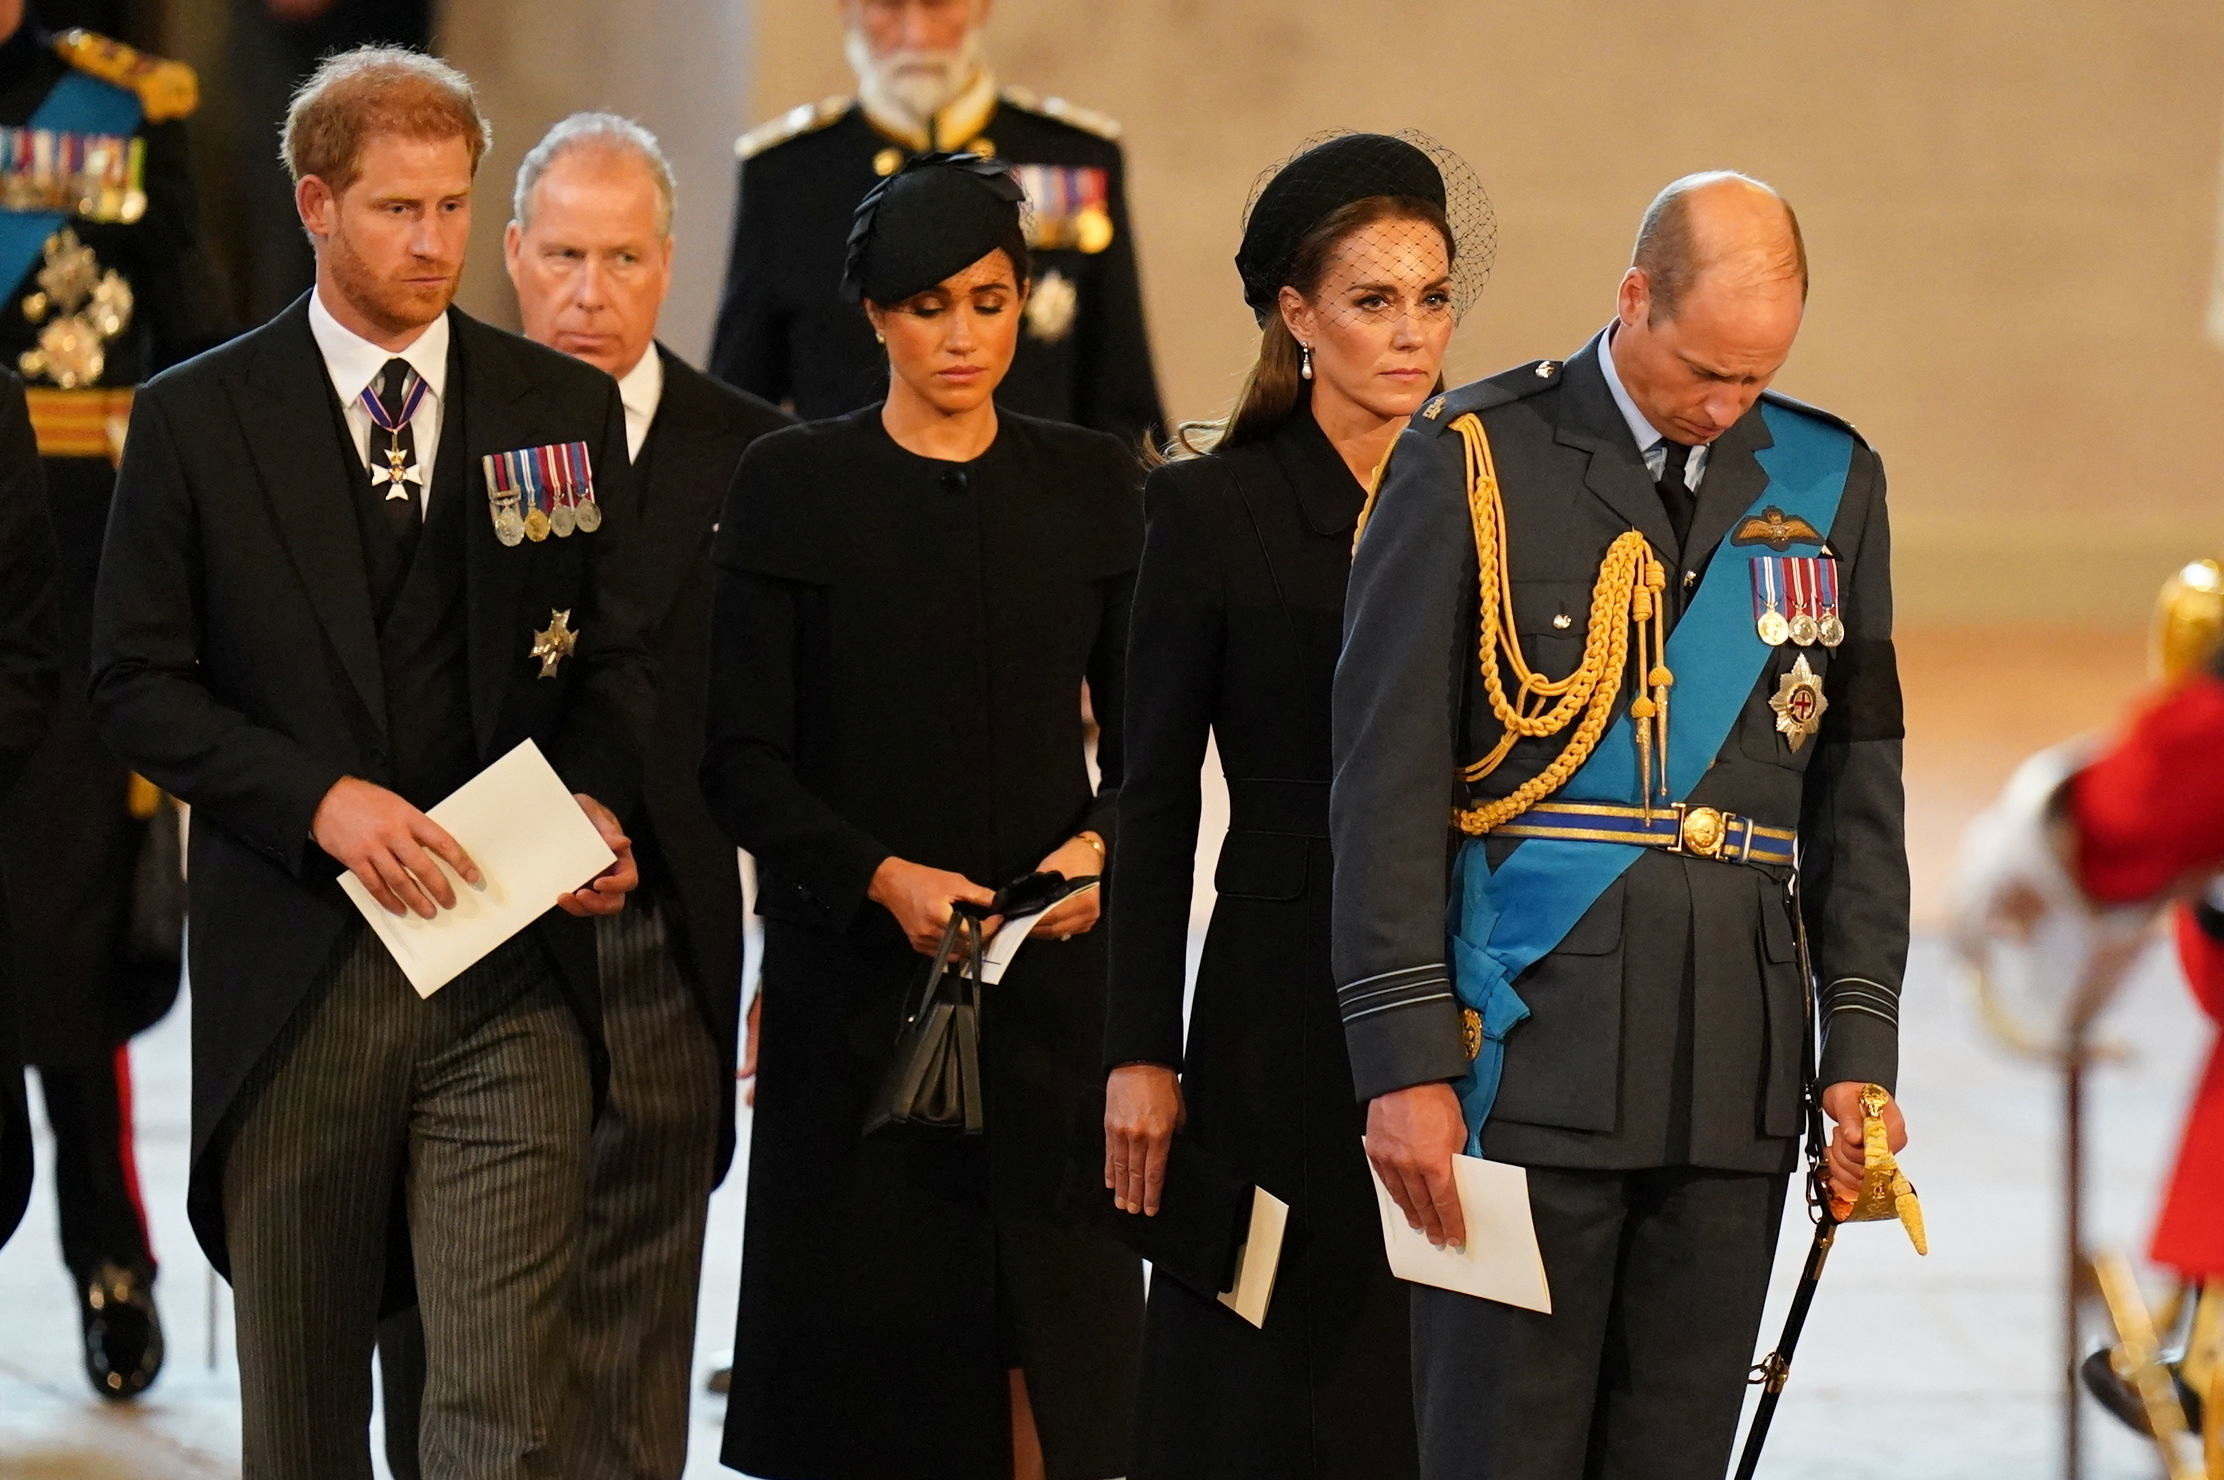 El duque de Sussex y Meghan Markle junto a la princesa y el príncipe de Gales en Westminster Hall, Londres (Reuters)